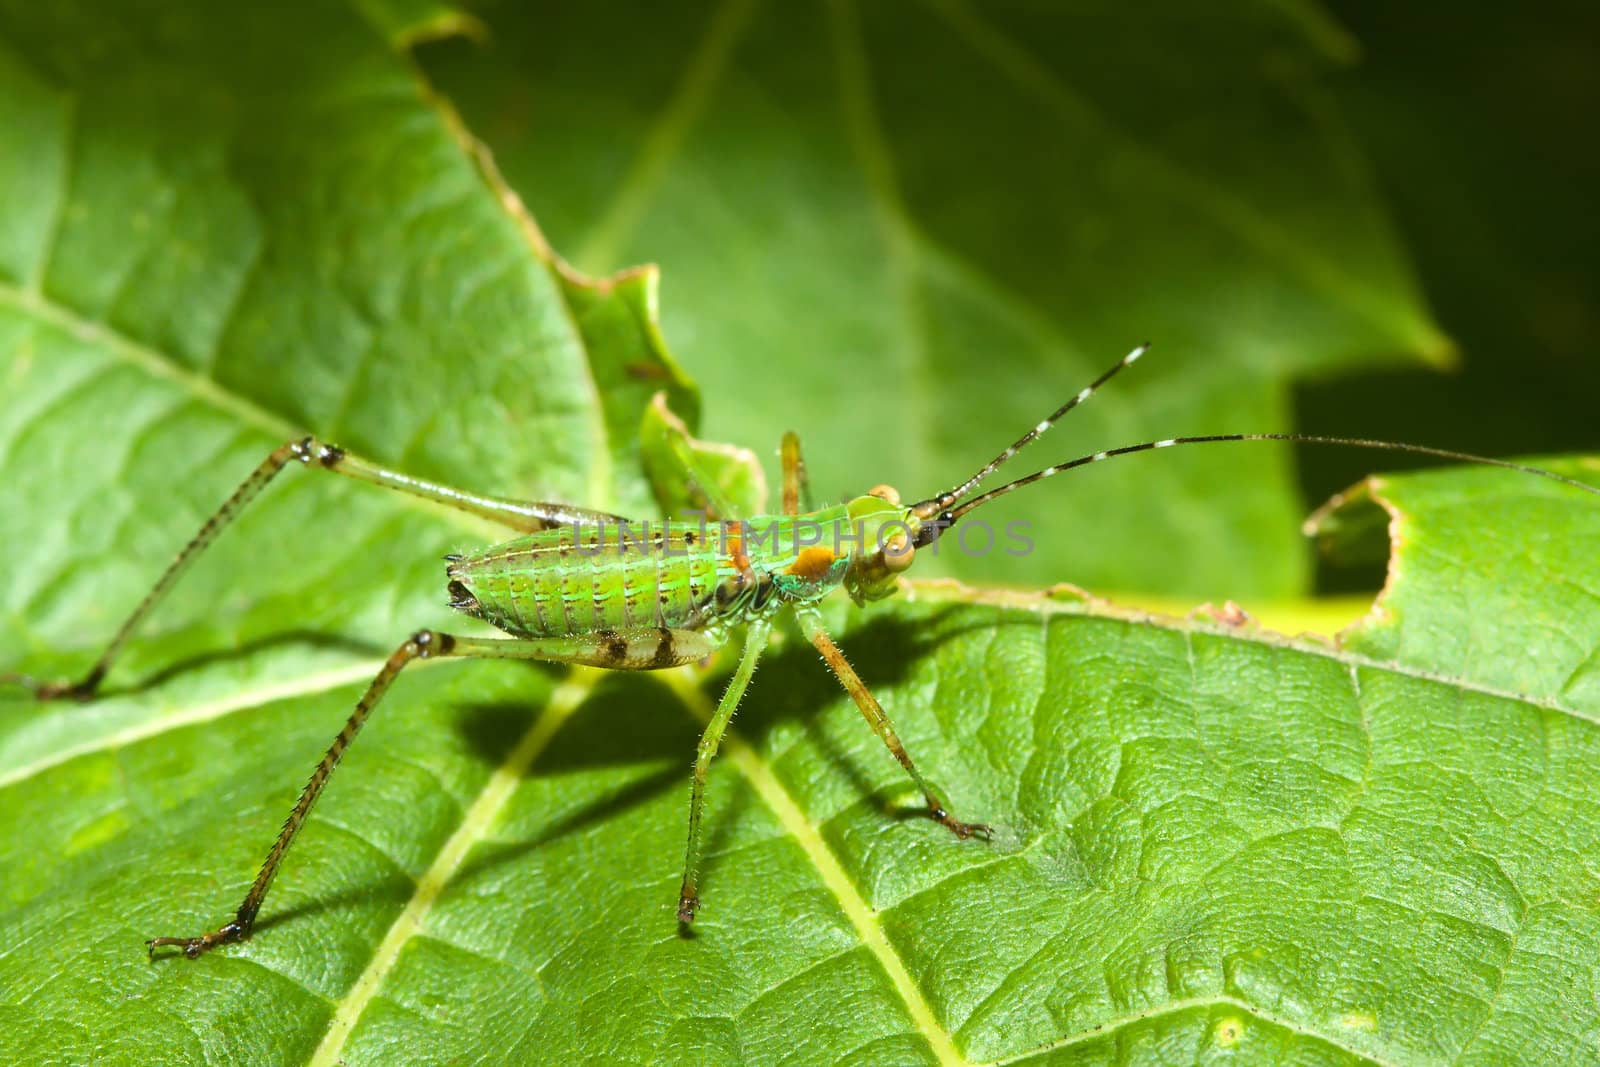 Bush Cricket (Tettigoniidae) crawling across a leaf.